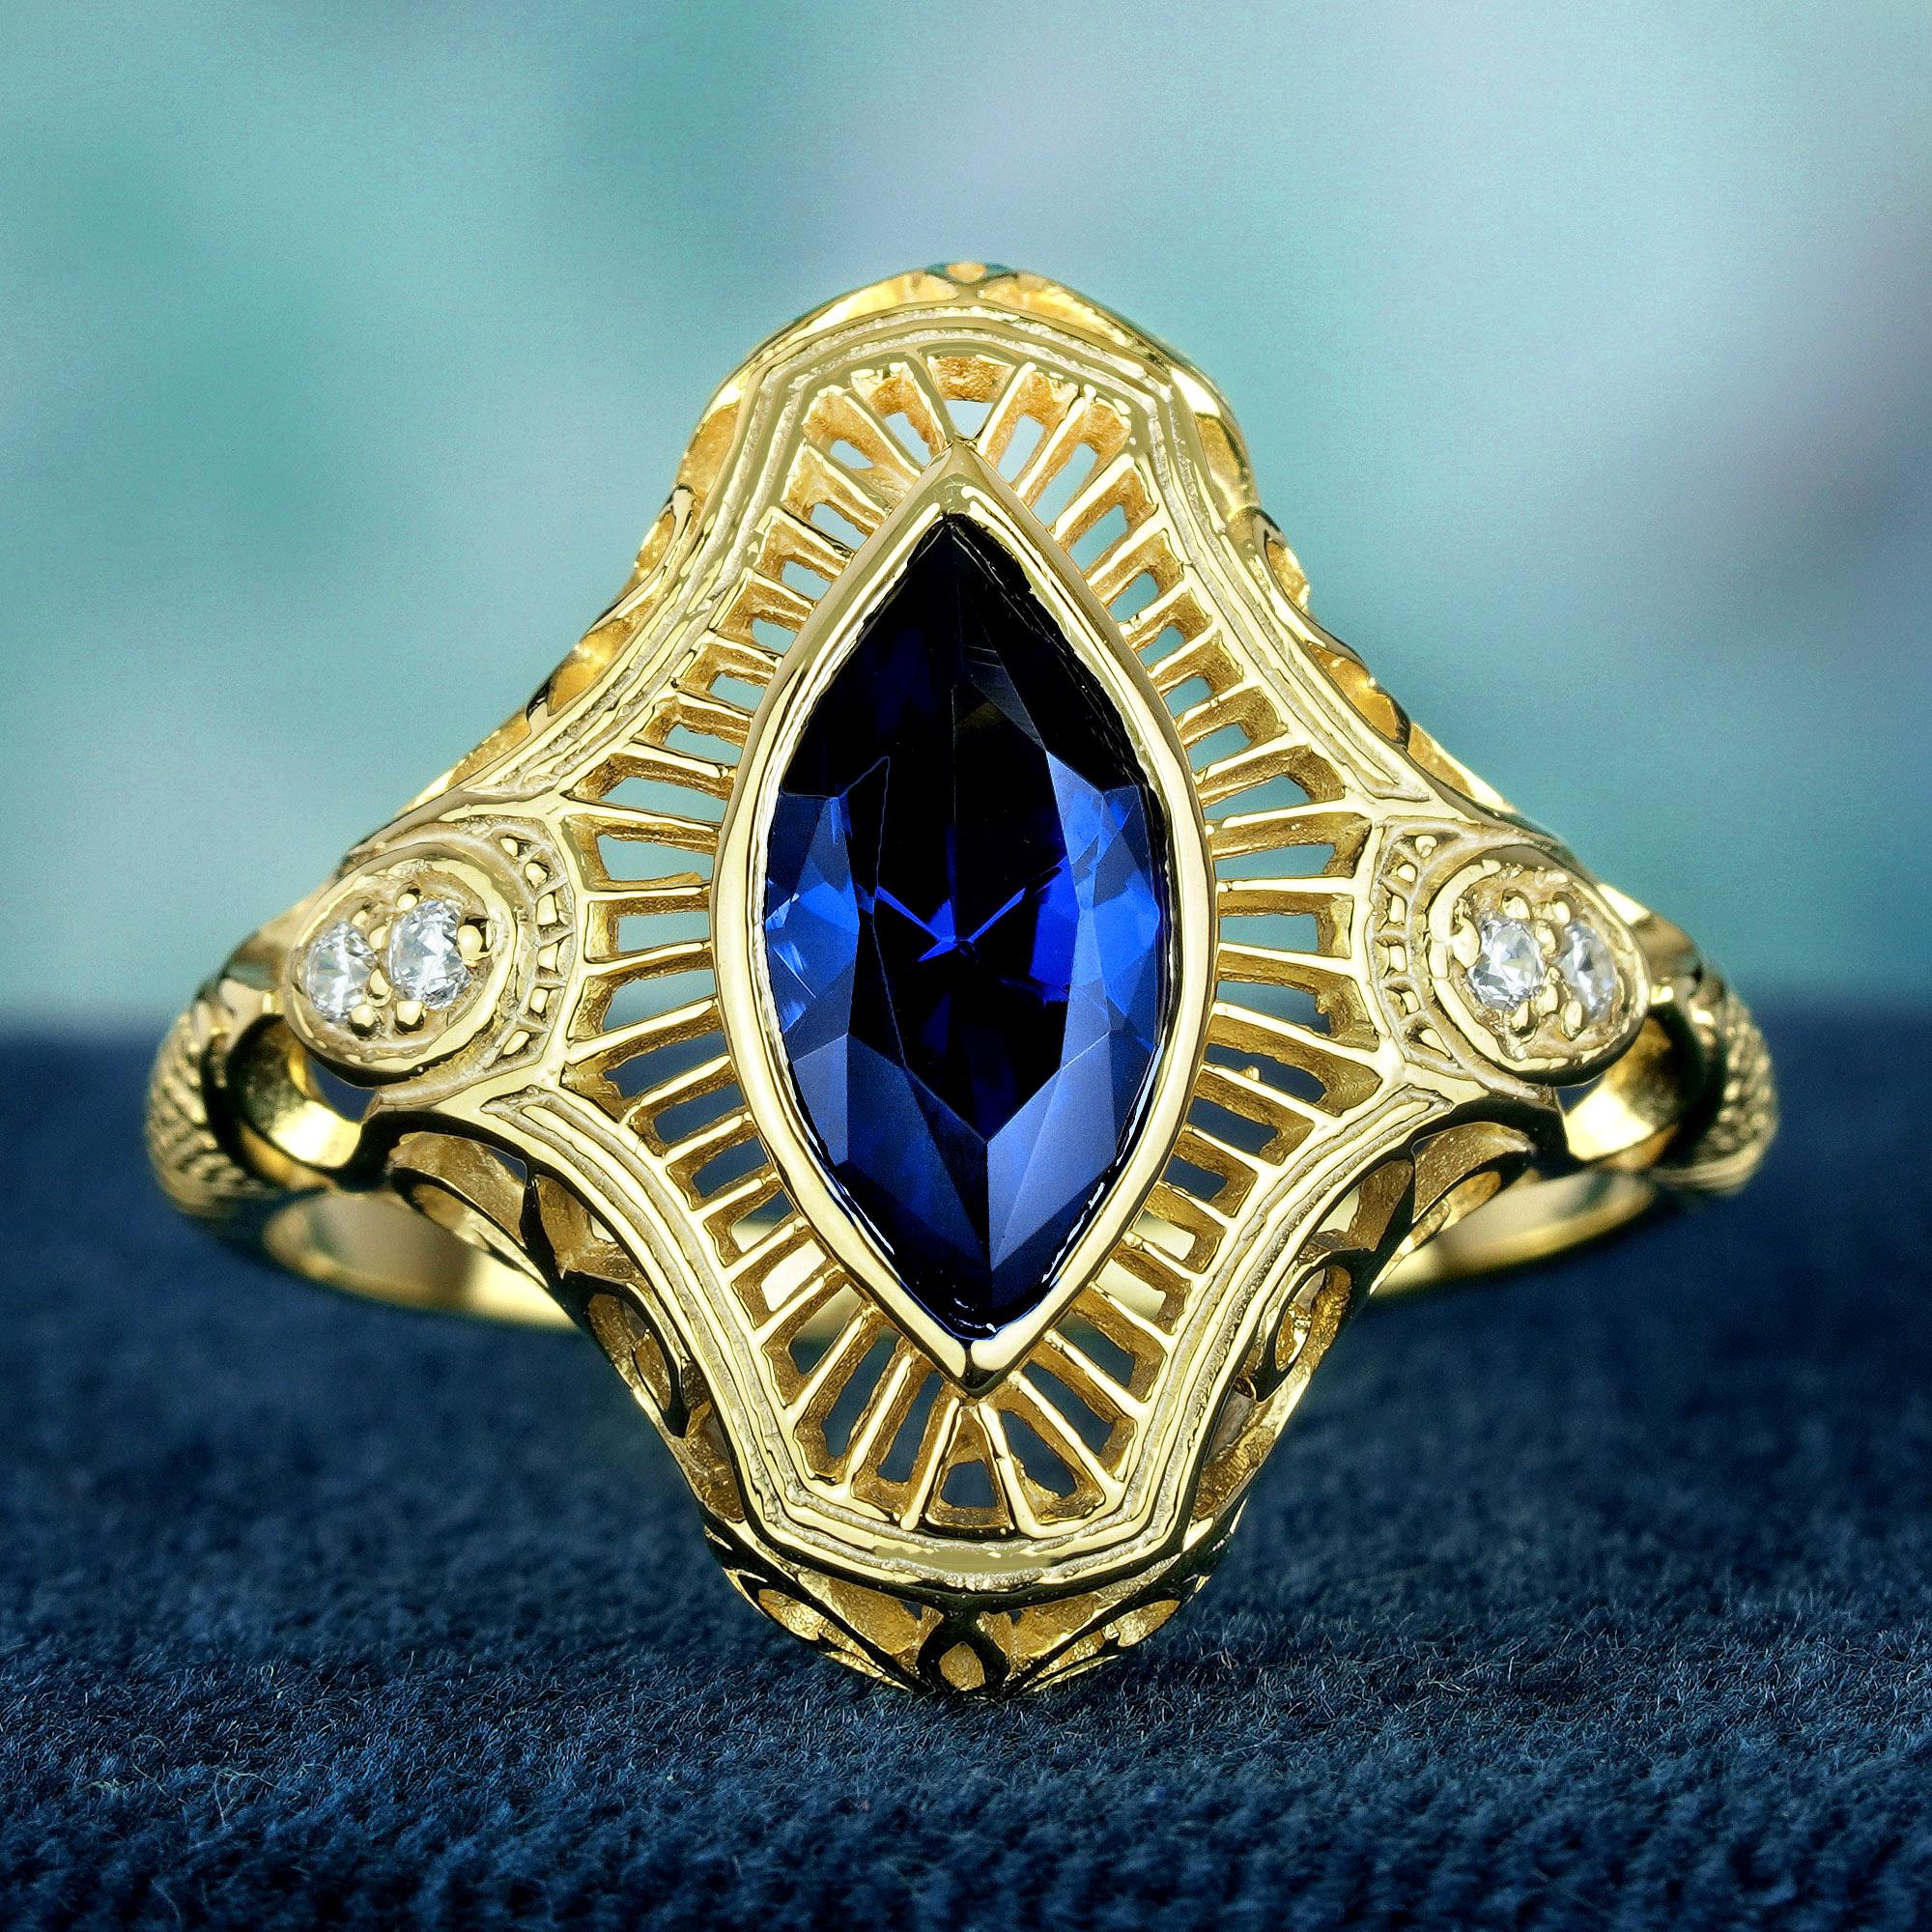 Gönnen Sie sich zeitlose Eleganz mit unserem Ring aus blauem Marquise-Saphir im Art Deco-Stil. Das filigrane Design aus Weißgold wird durch runde Diamanten auf jeder Seite veredelt und strahlt Raffinesse und Charme aus. Mit diesem atemberaubenden